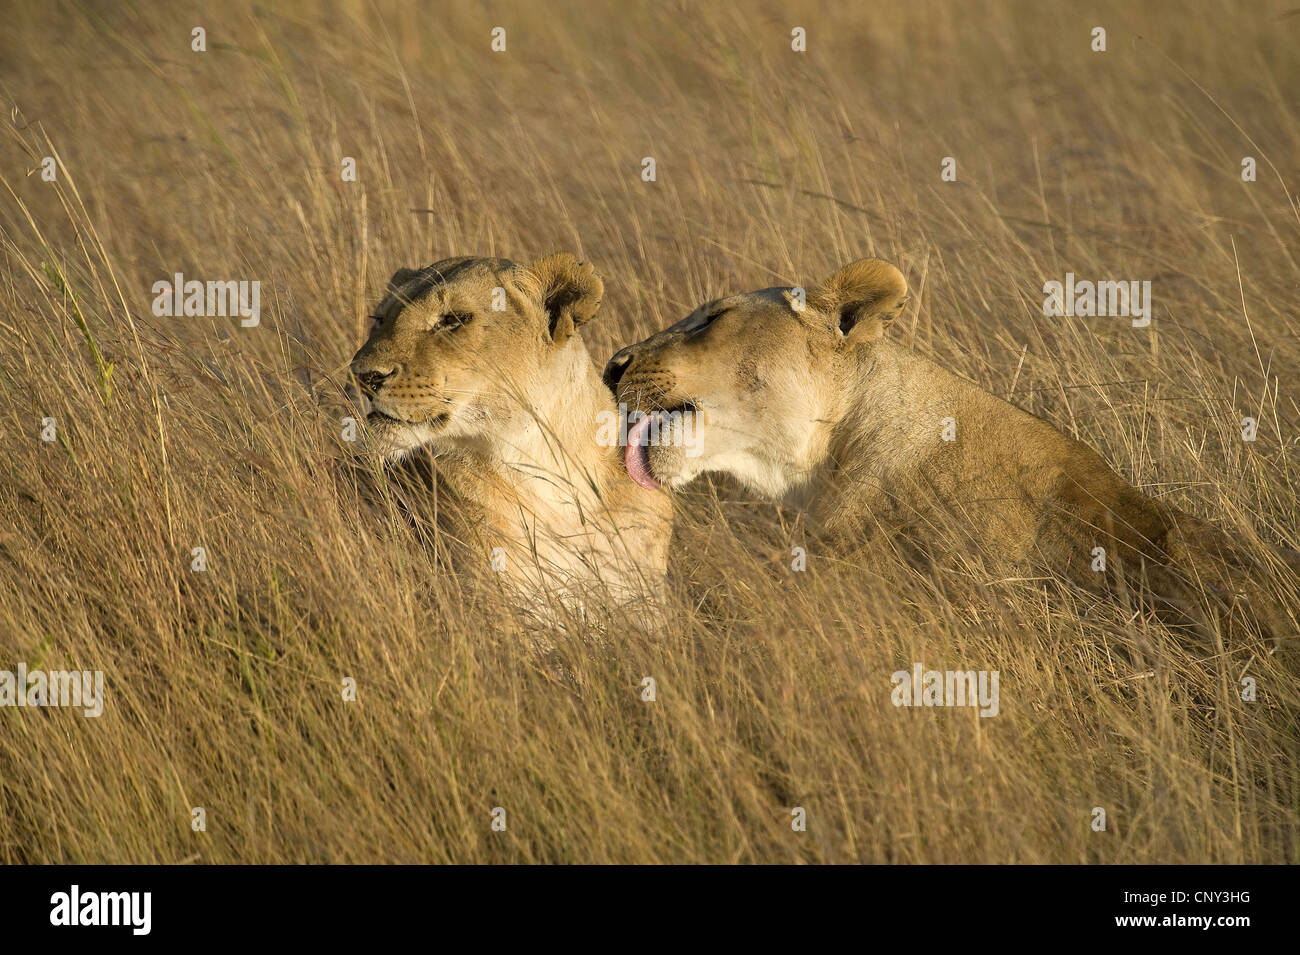 lion (Panthera leo), mother licking her pup, Kenya, Masai Mara National Park Stock Photo